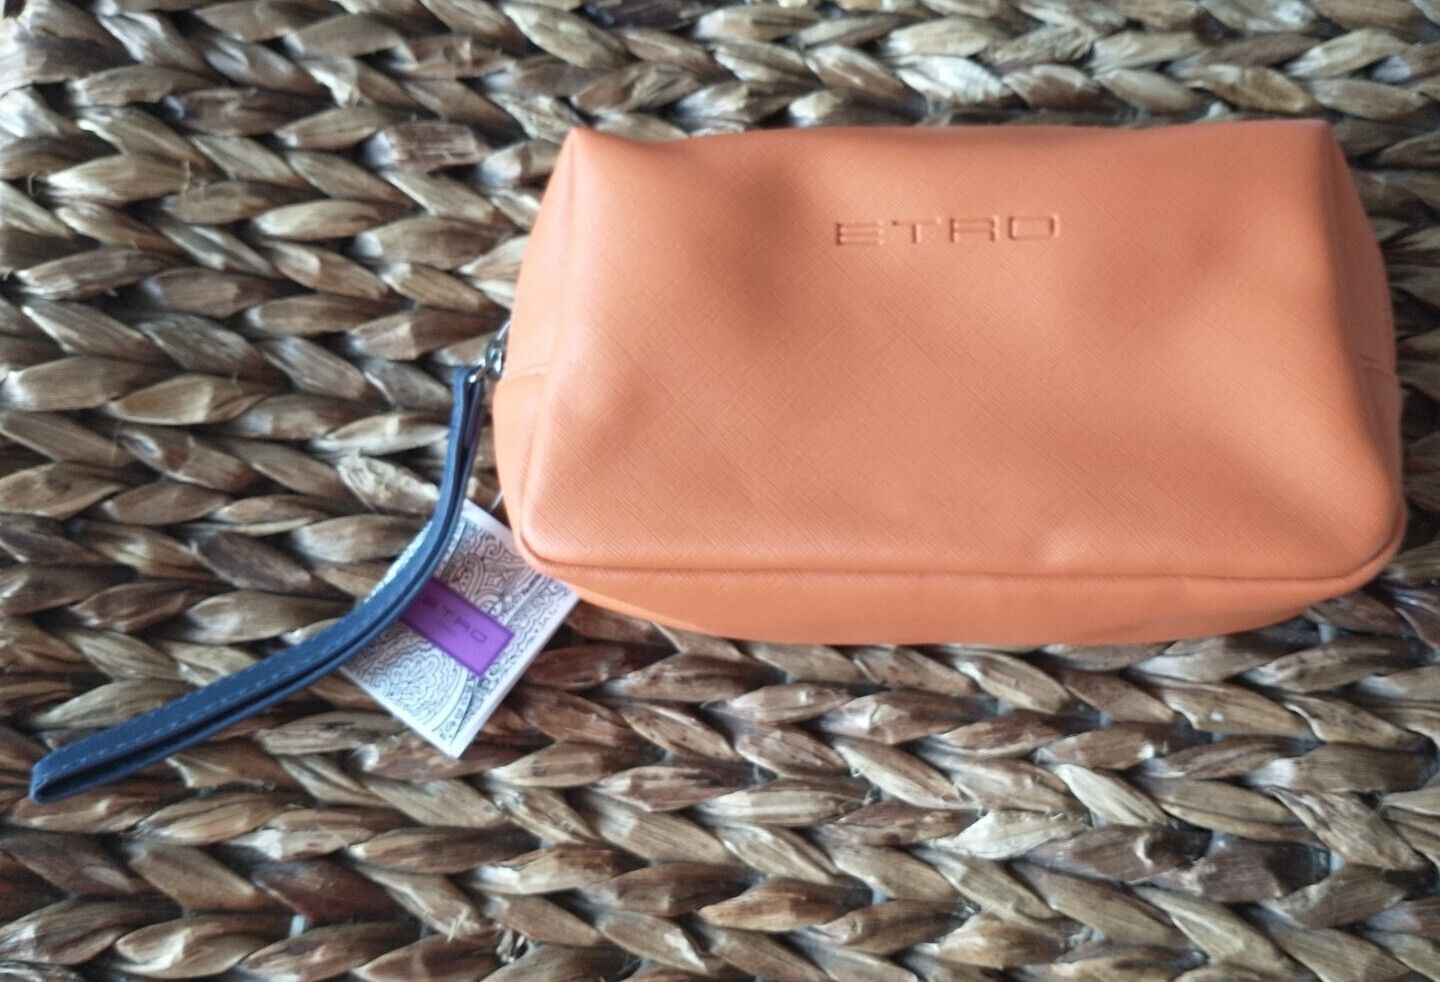 Etro Profumi Exclusively AeroMexico Orange Amenity Kit Wristlet Bag Case Only